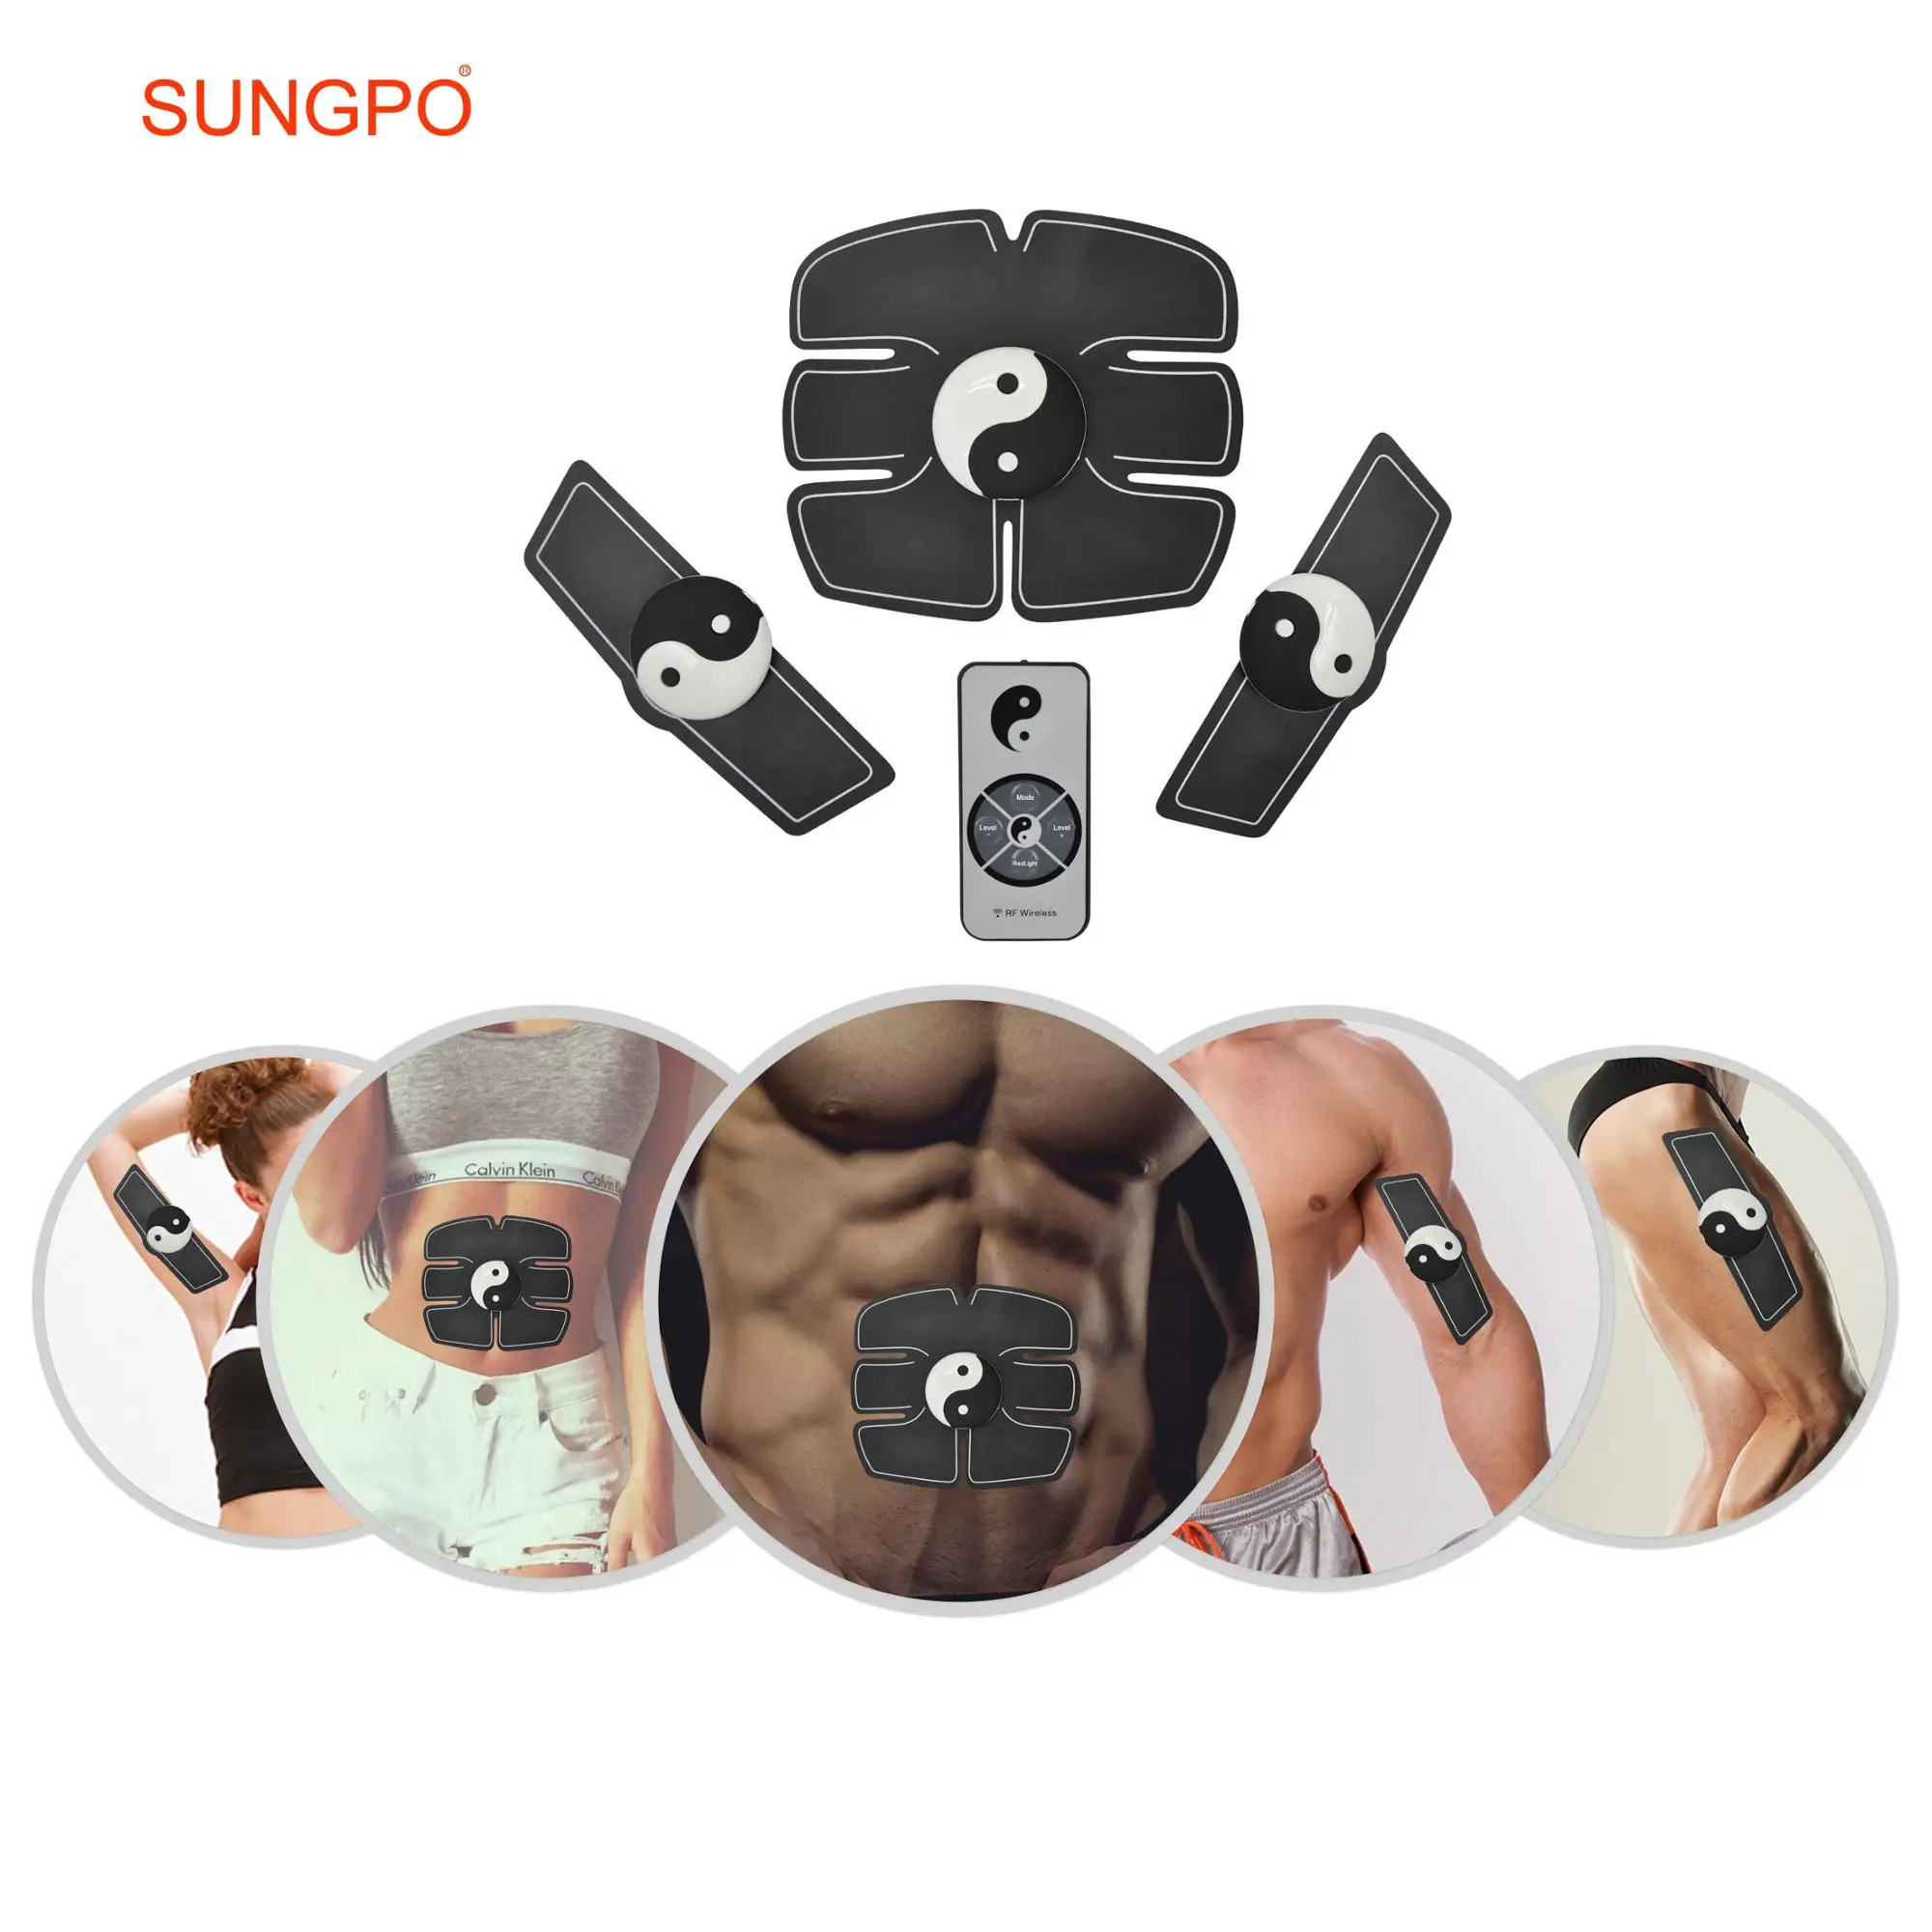 SUNGPO Smart EMS Massage Muscle Stimulation Trainer